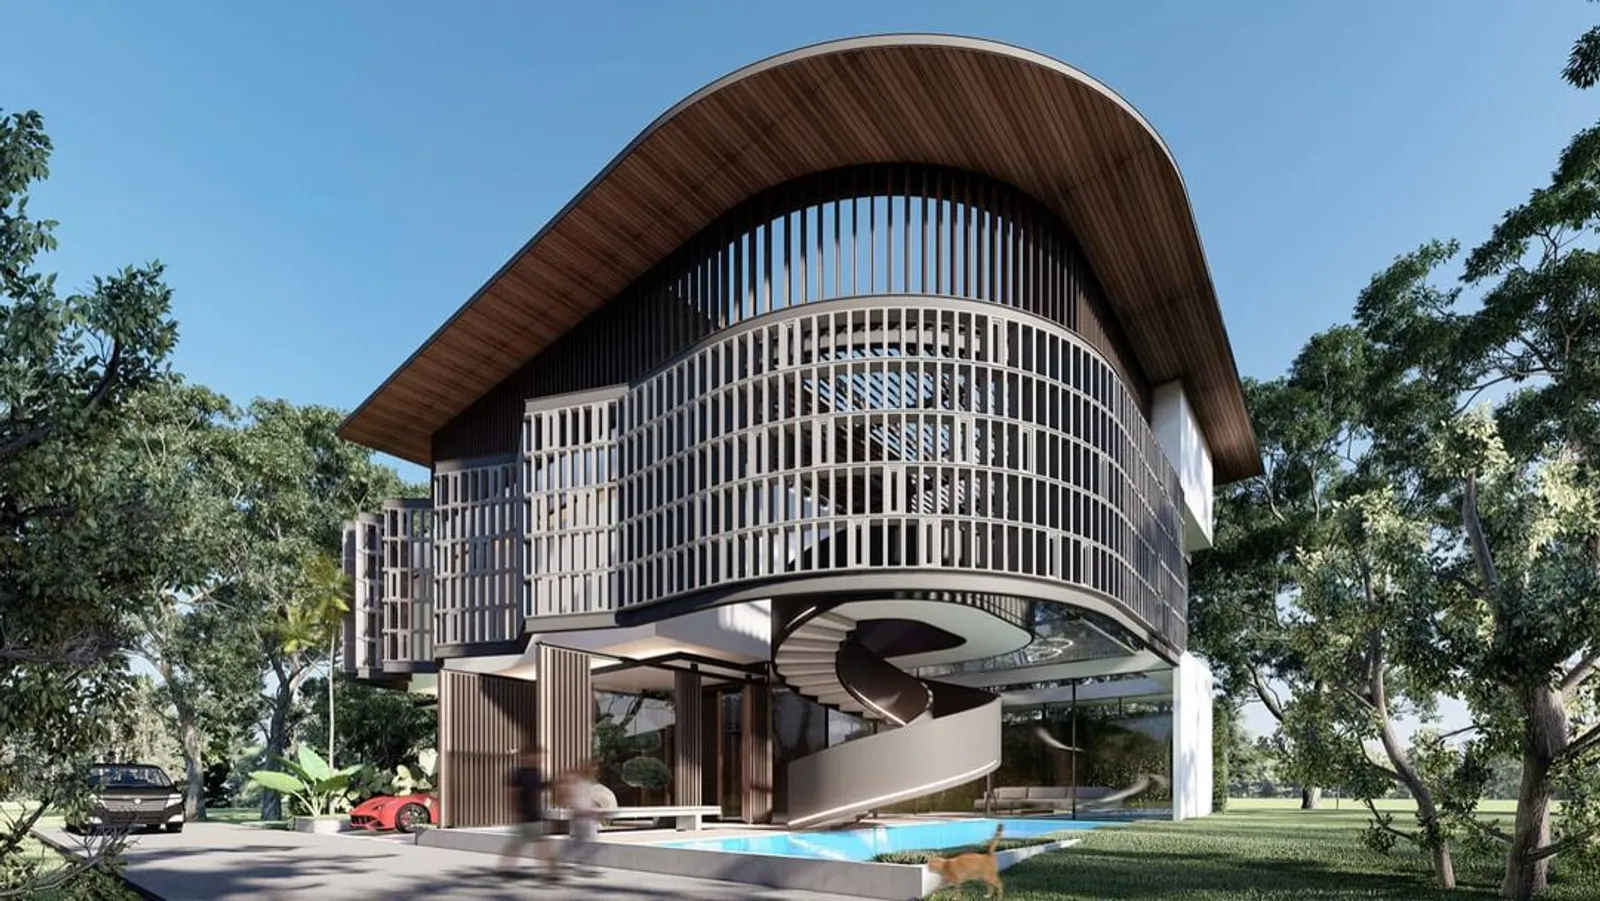 Mewah Seperti Mall, Ini Potret Rumah Baru Ayu Ting Ting di Jakarta